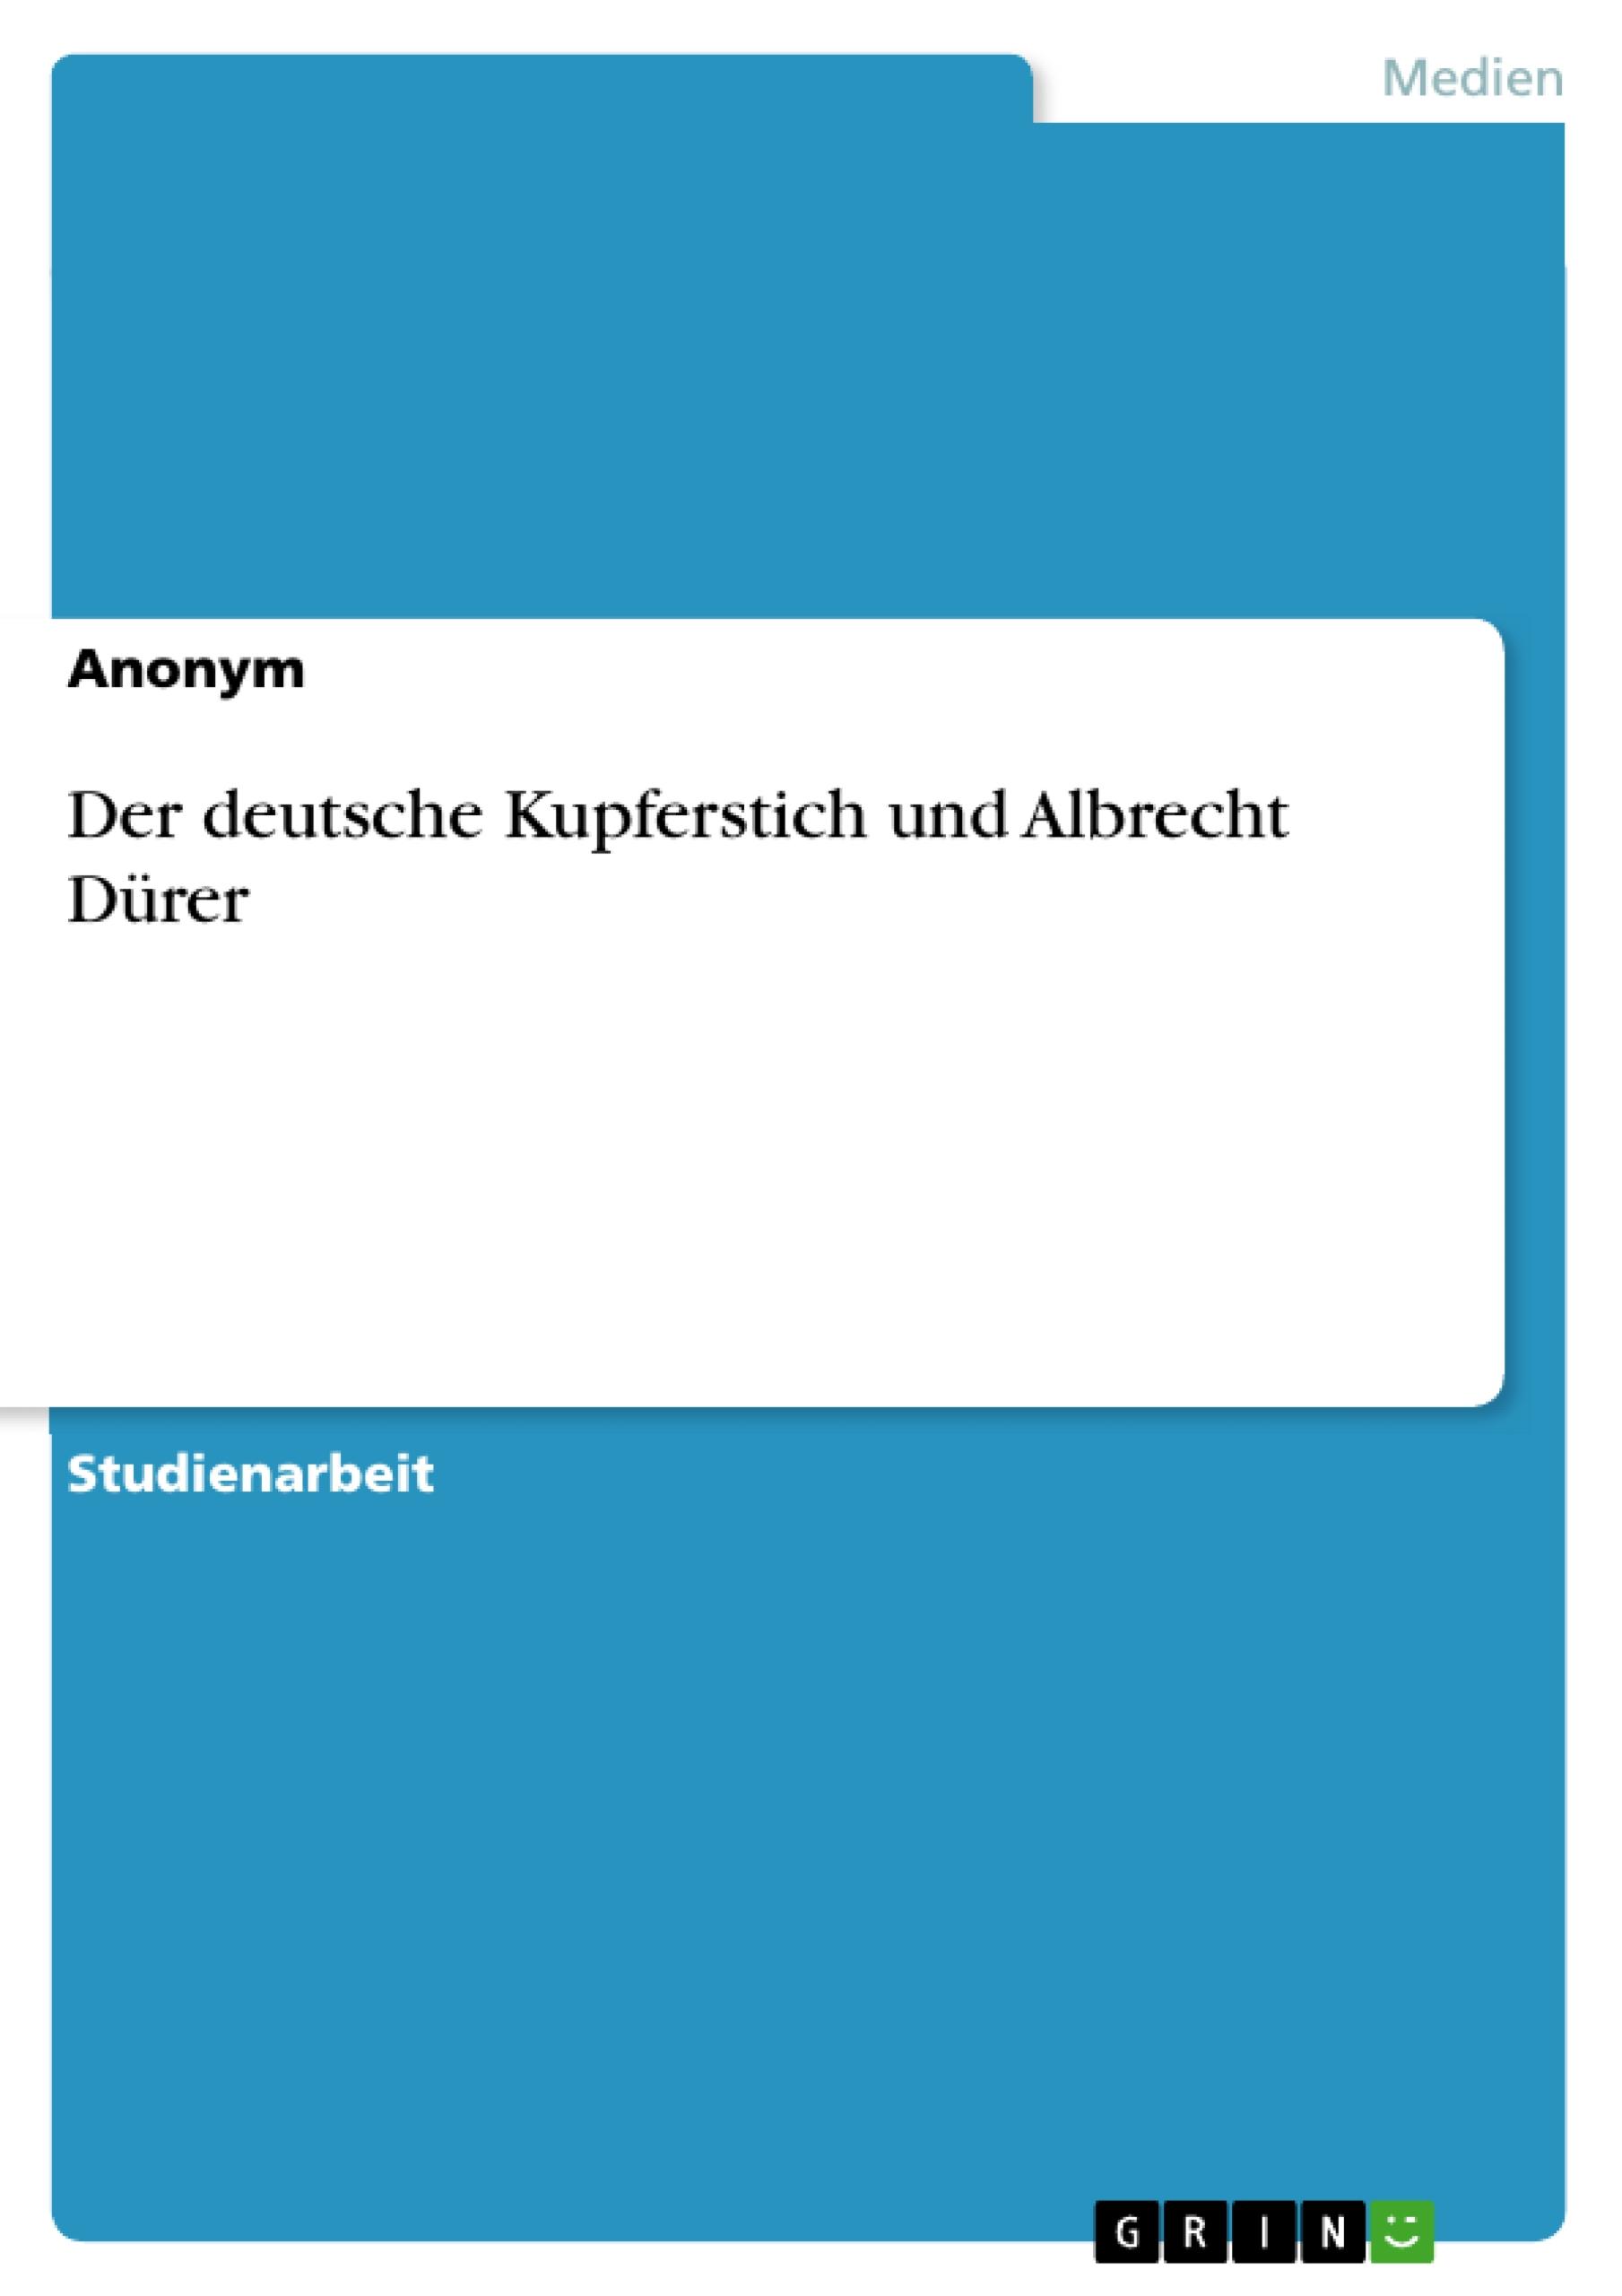 Der deutsche Kupferstich und Albrecht Dürer / Taschenbuch / Booklet / 16 S. / Deutsch / 2010 / GRIN Verlag / EAN 9783640755912